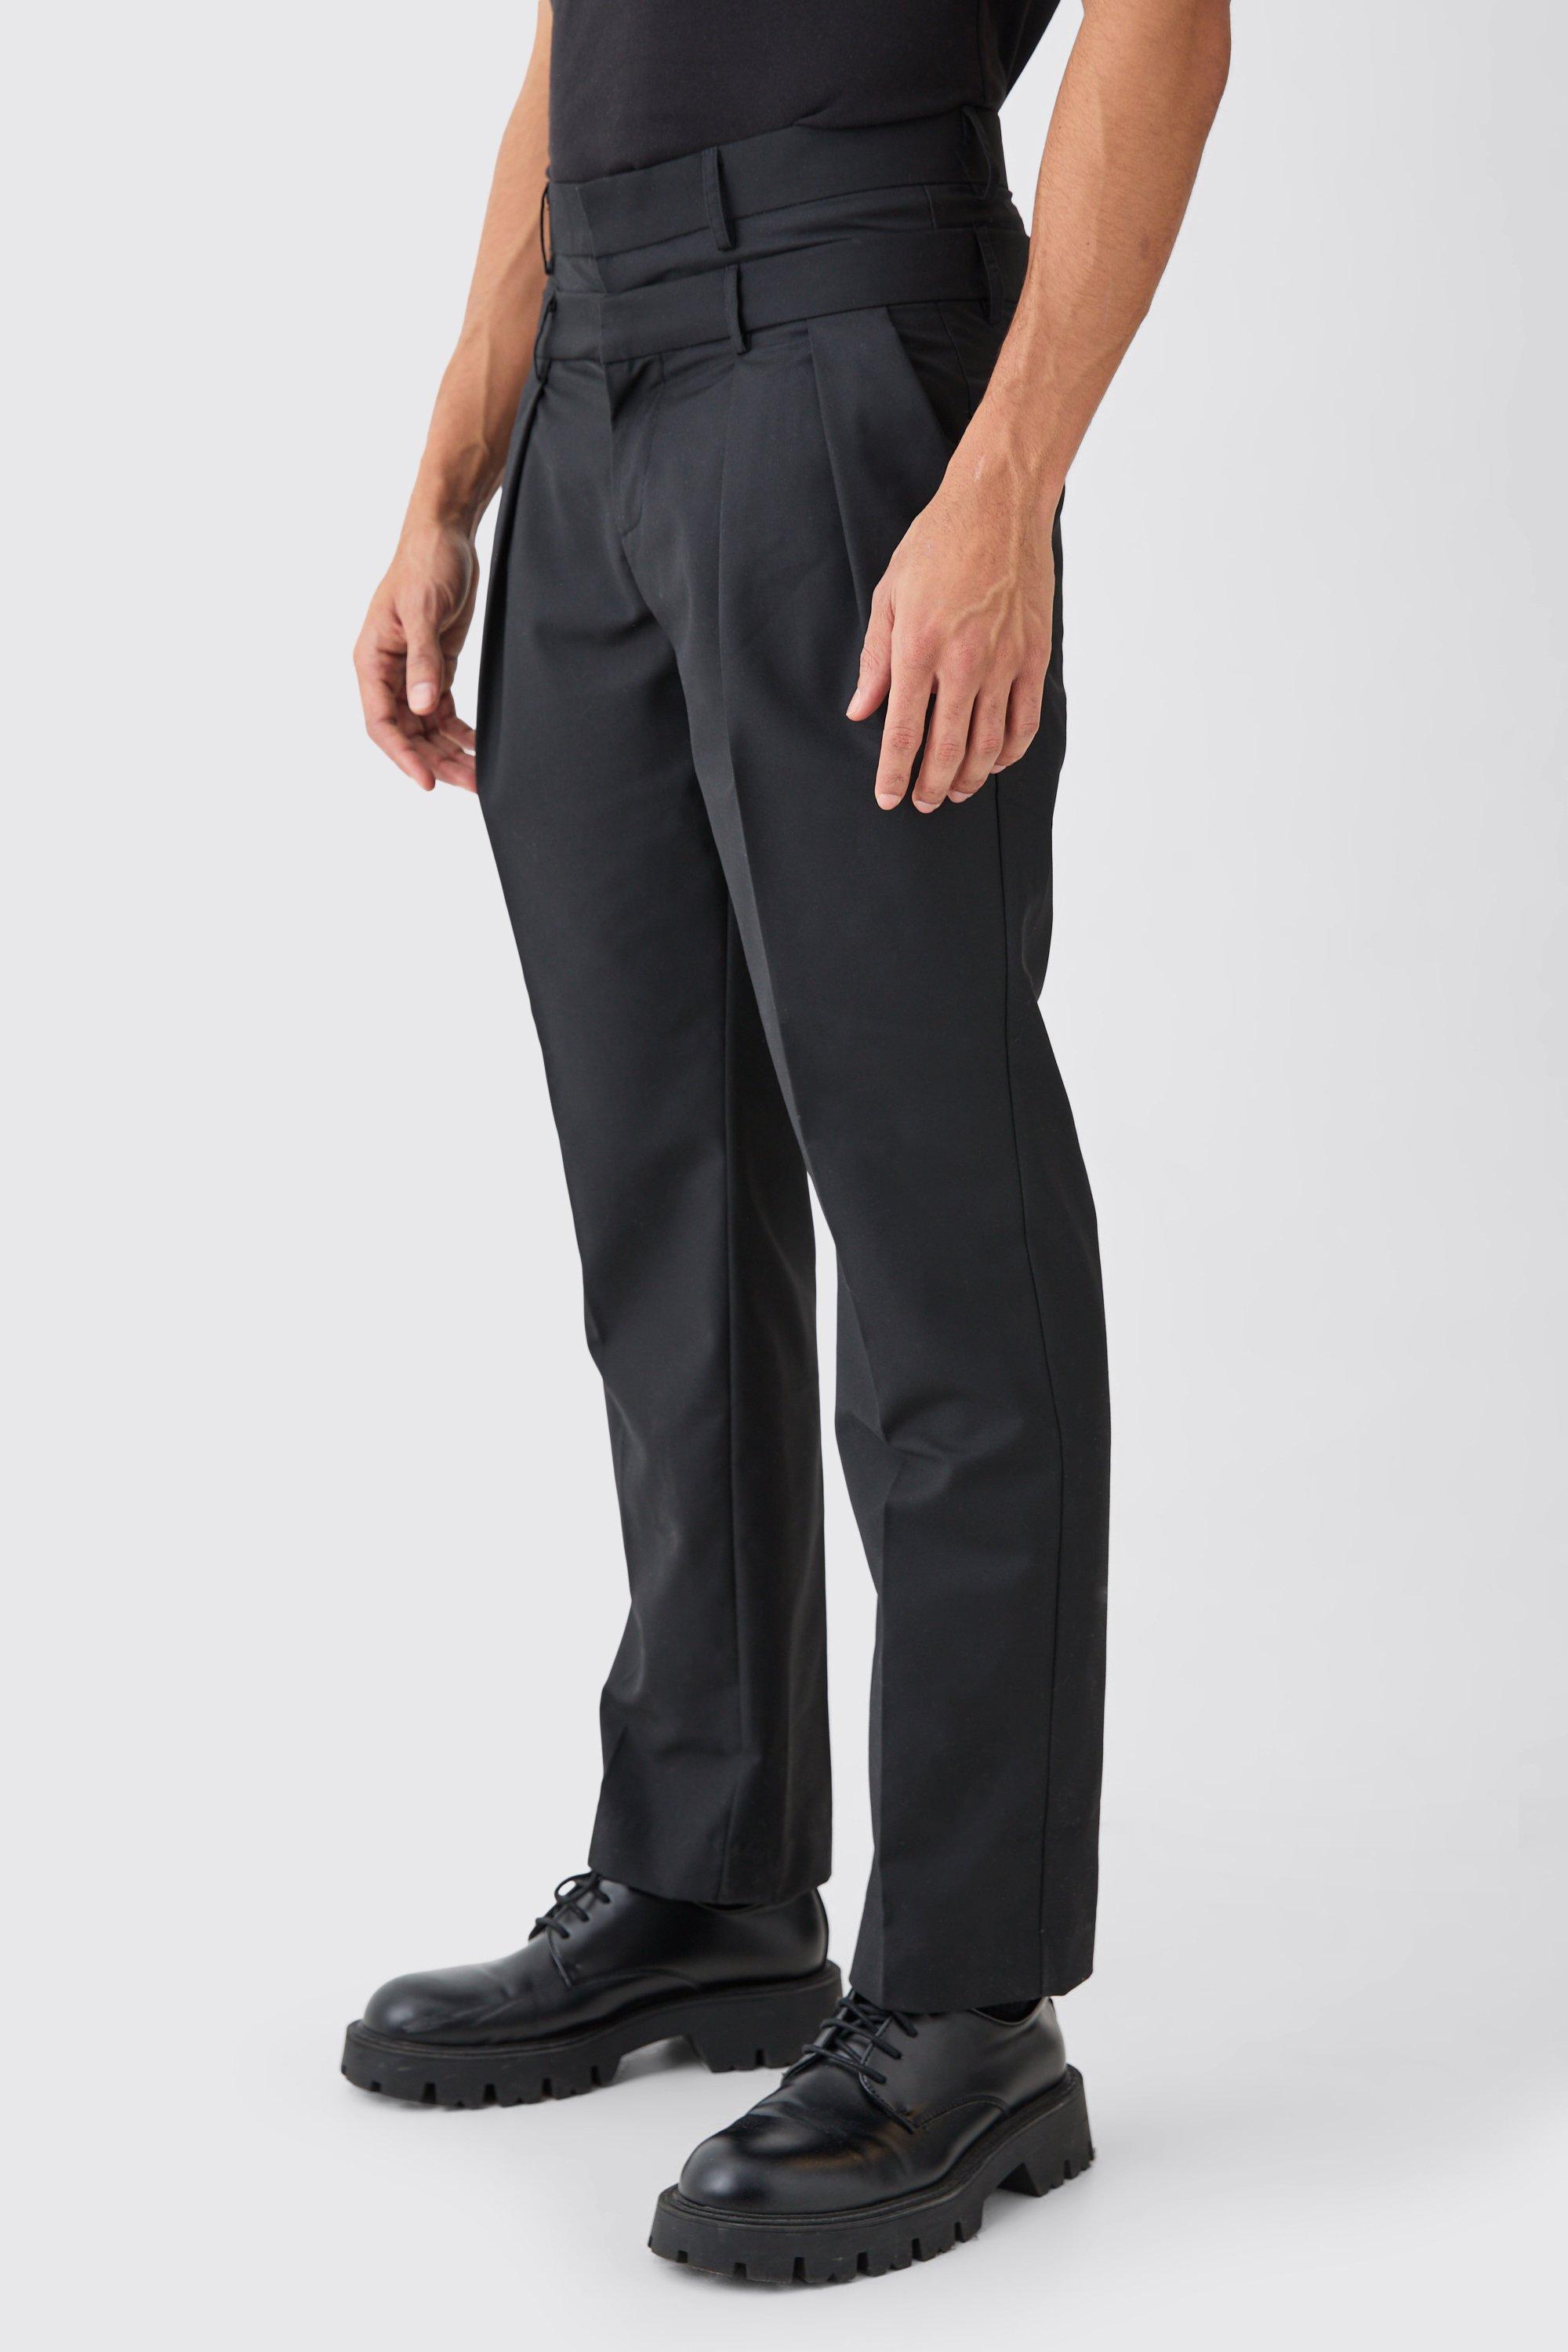 pantalon droit ajusté homme - noir - 30, noir